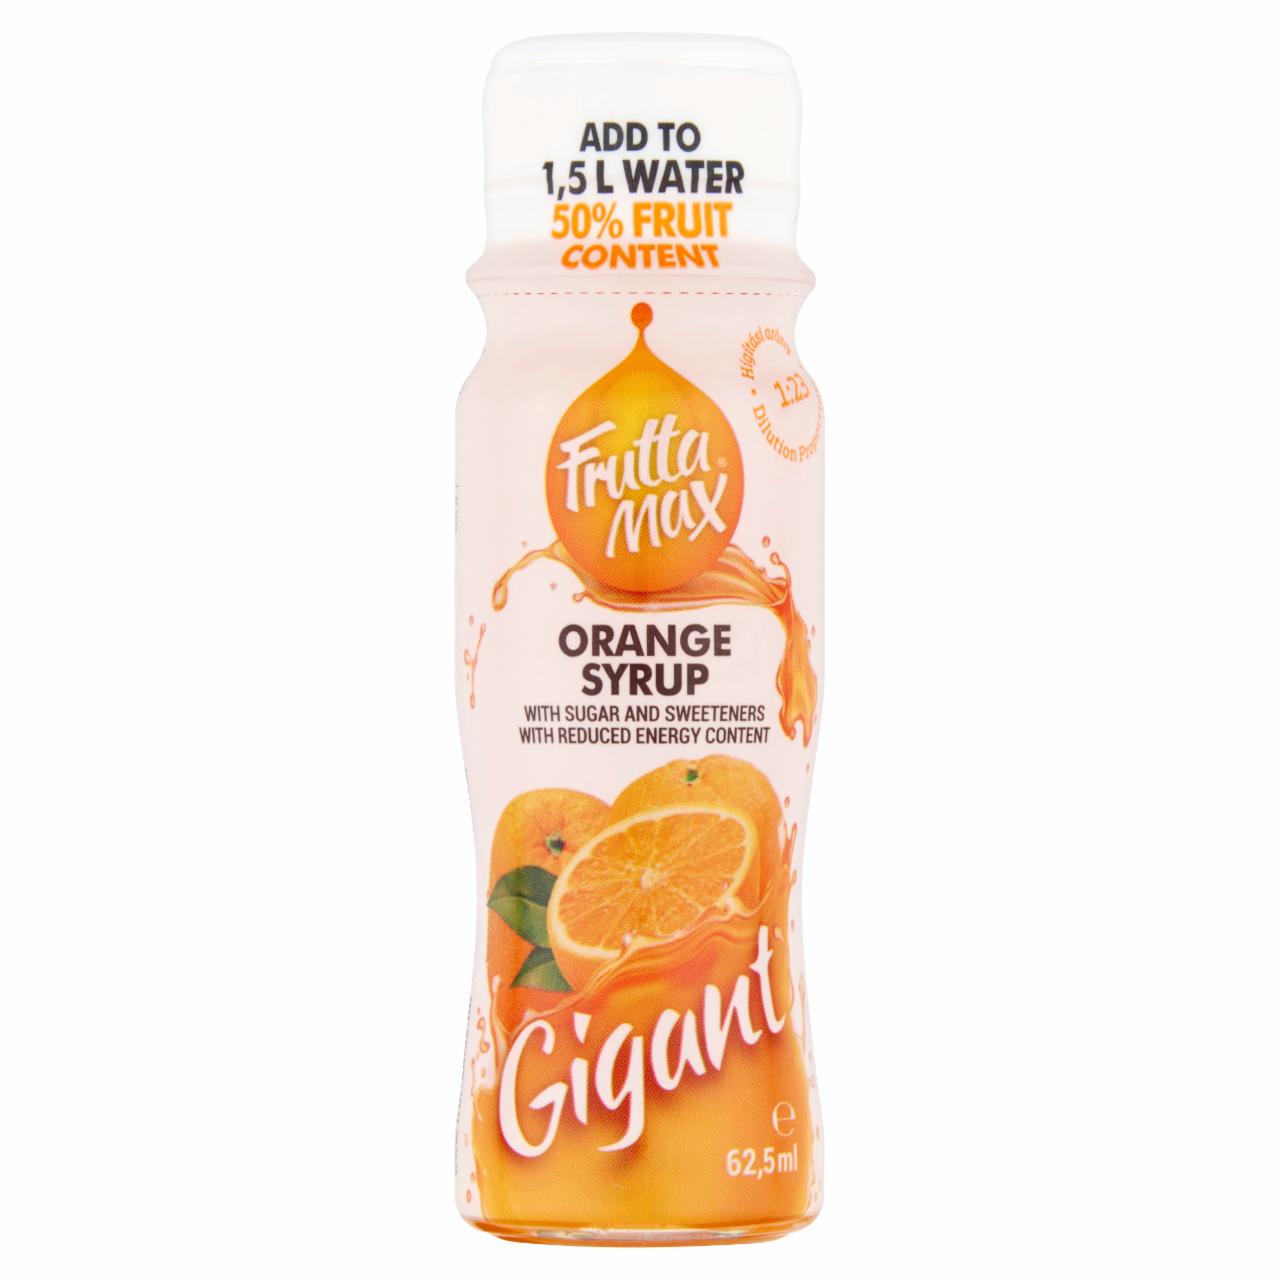 Képek - FruttaMax Gigant narancs gyümölcsszörp csökkentett energiatartalommal 62,5 ml